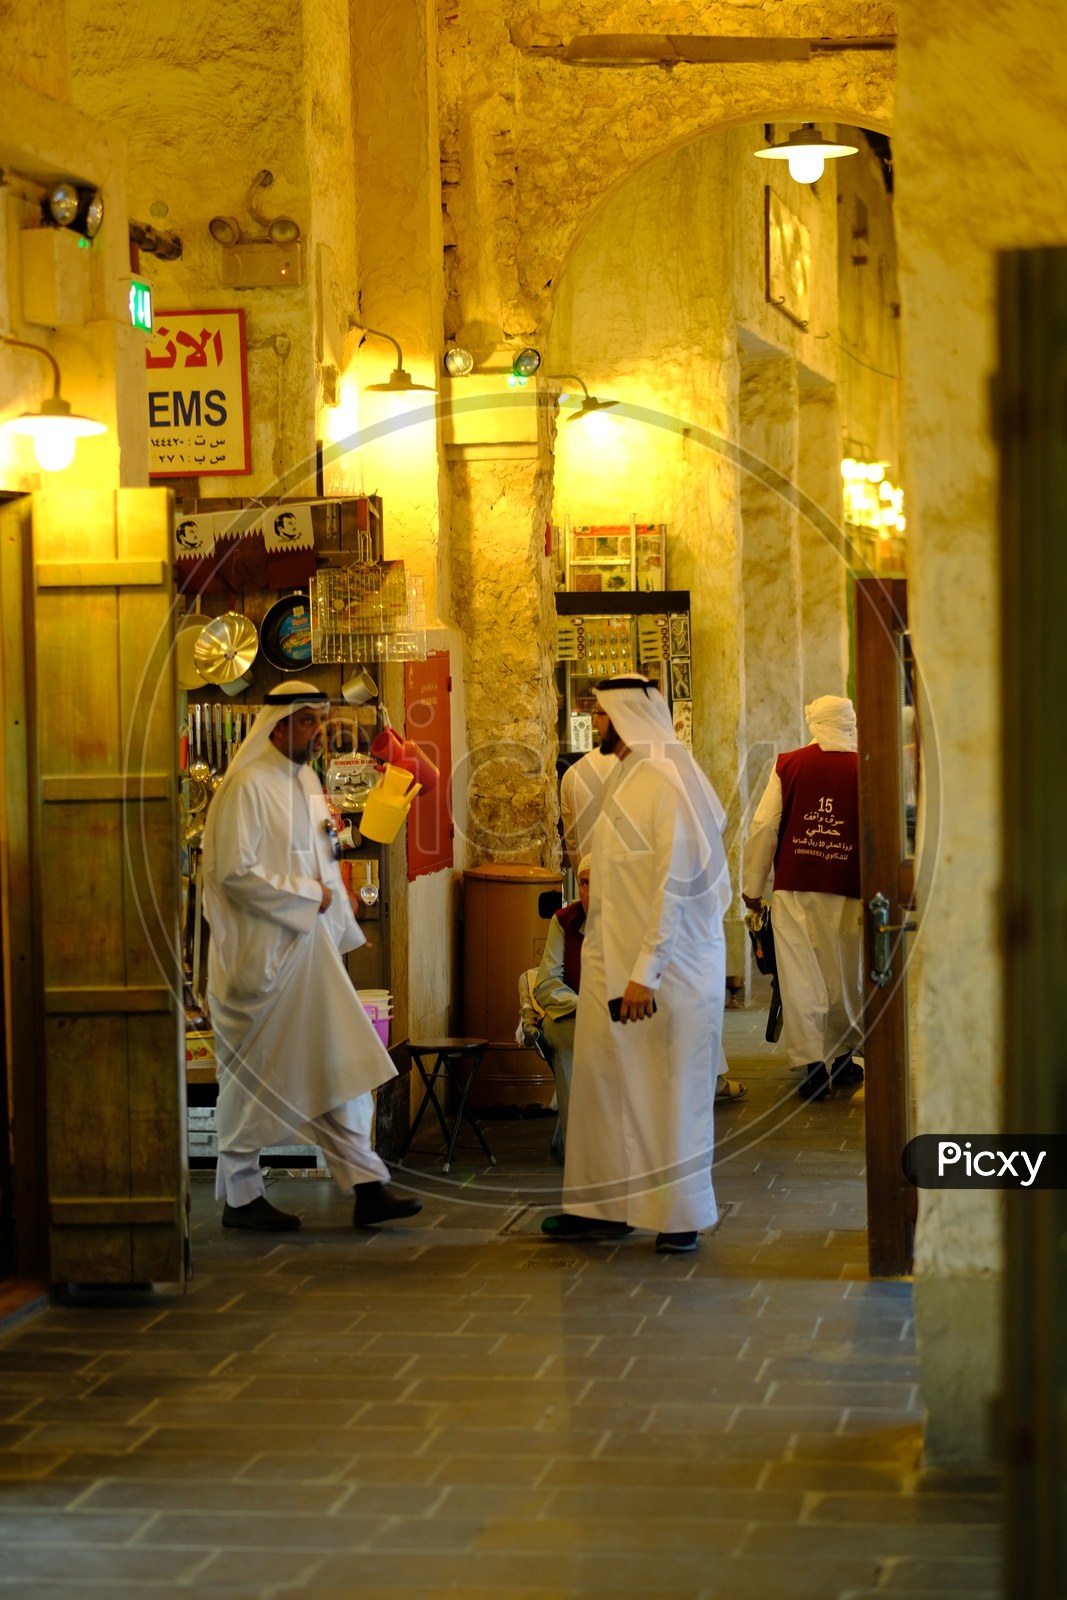 Dubai Sheikhs in Qatar